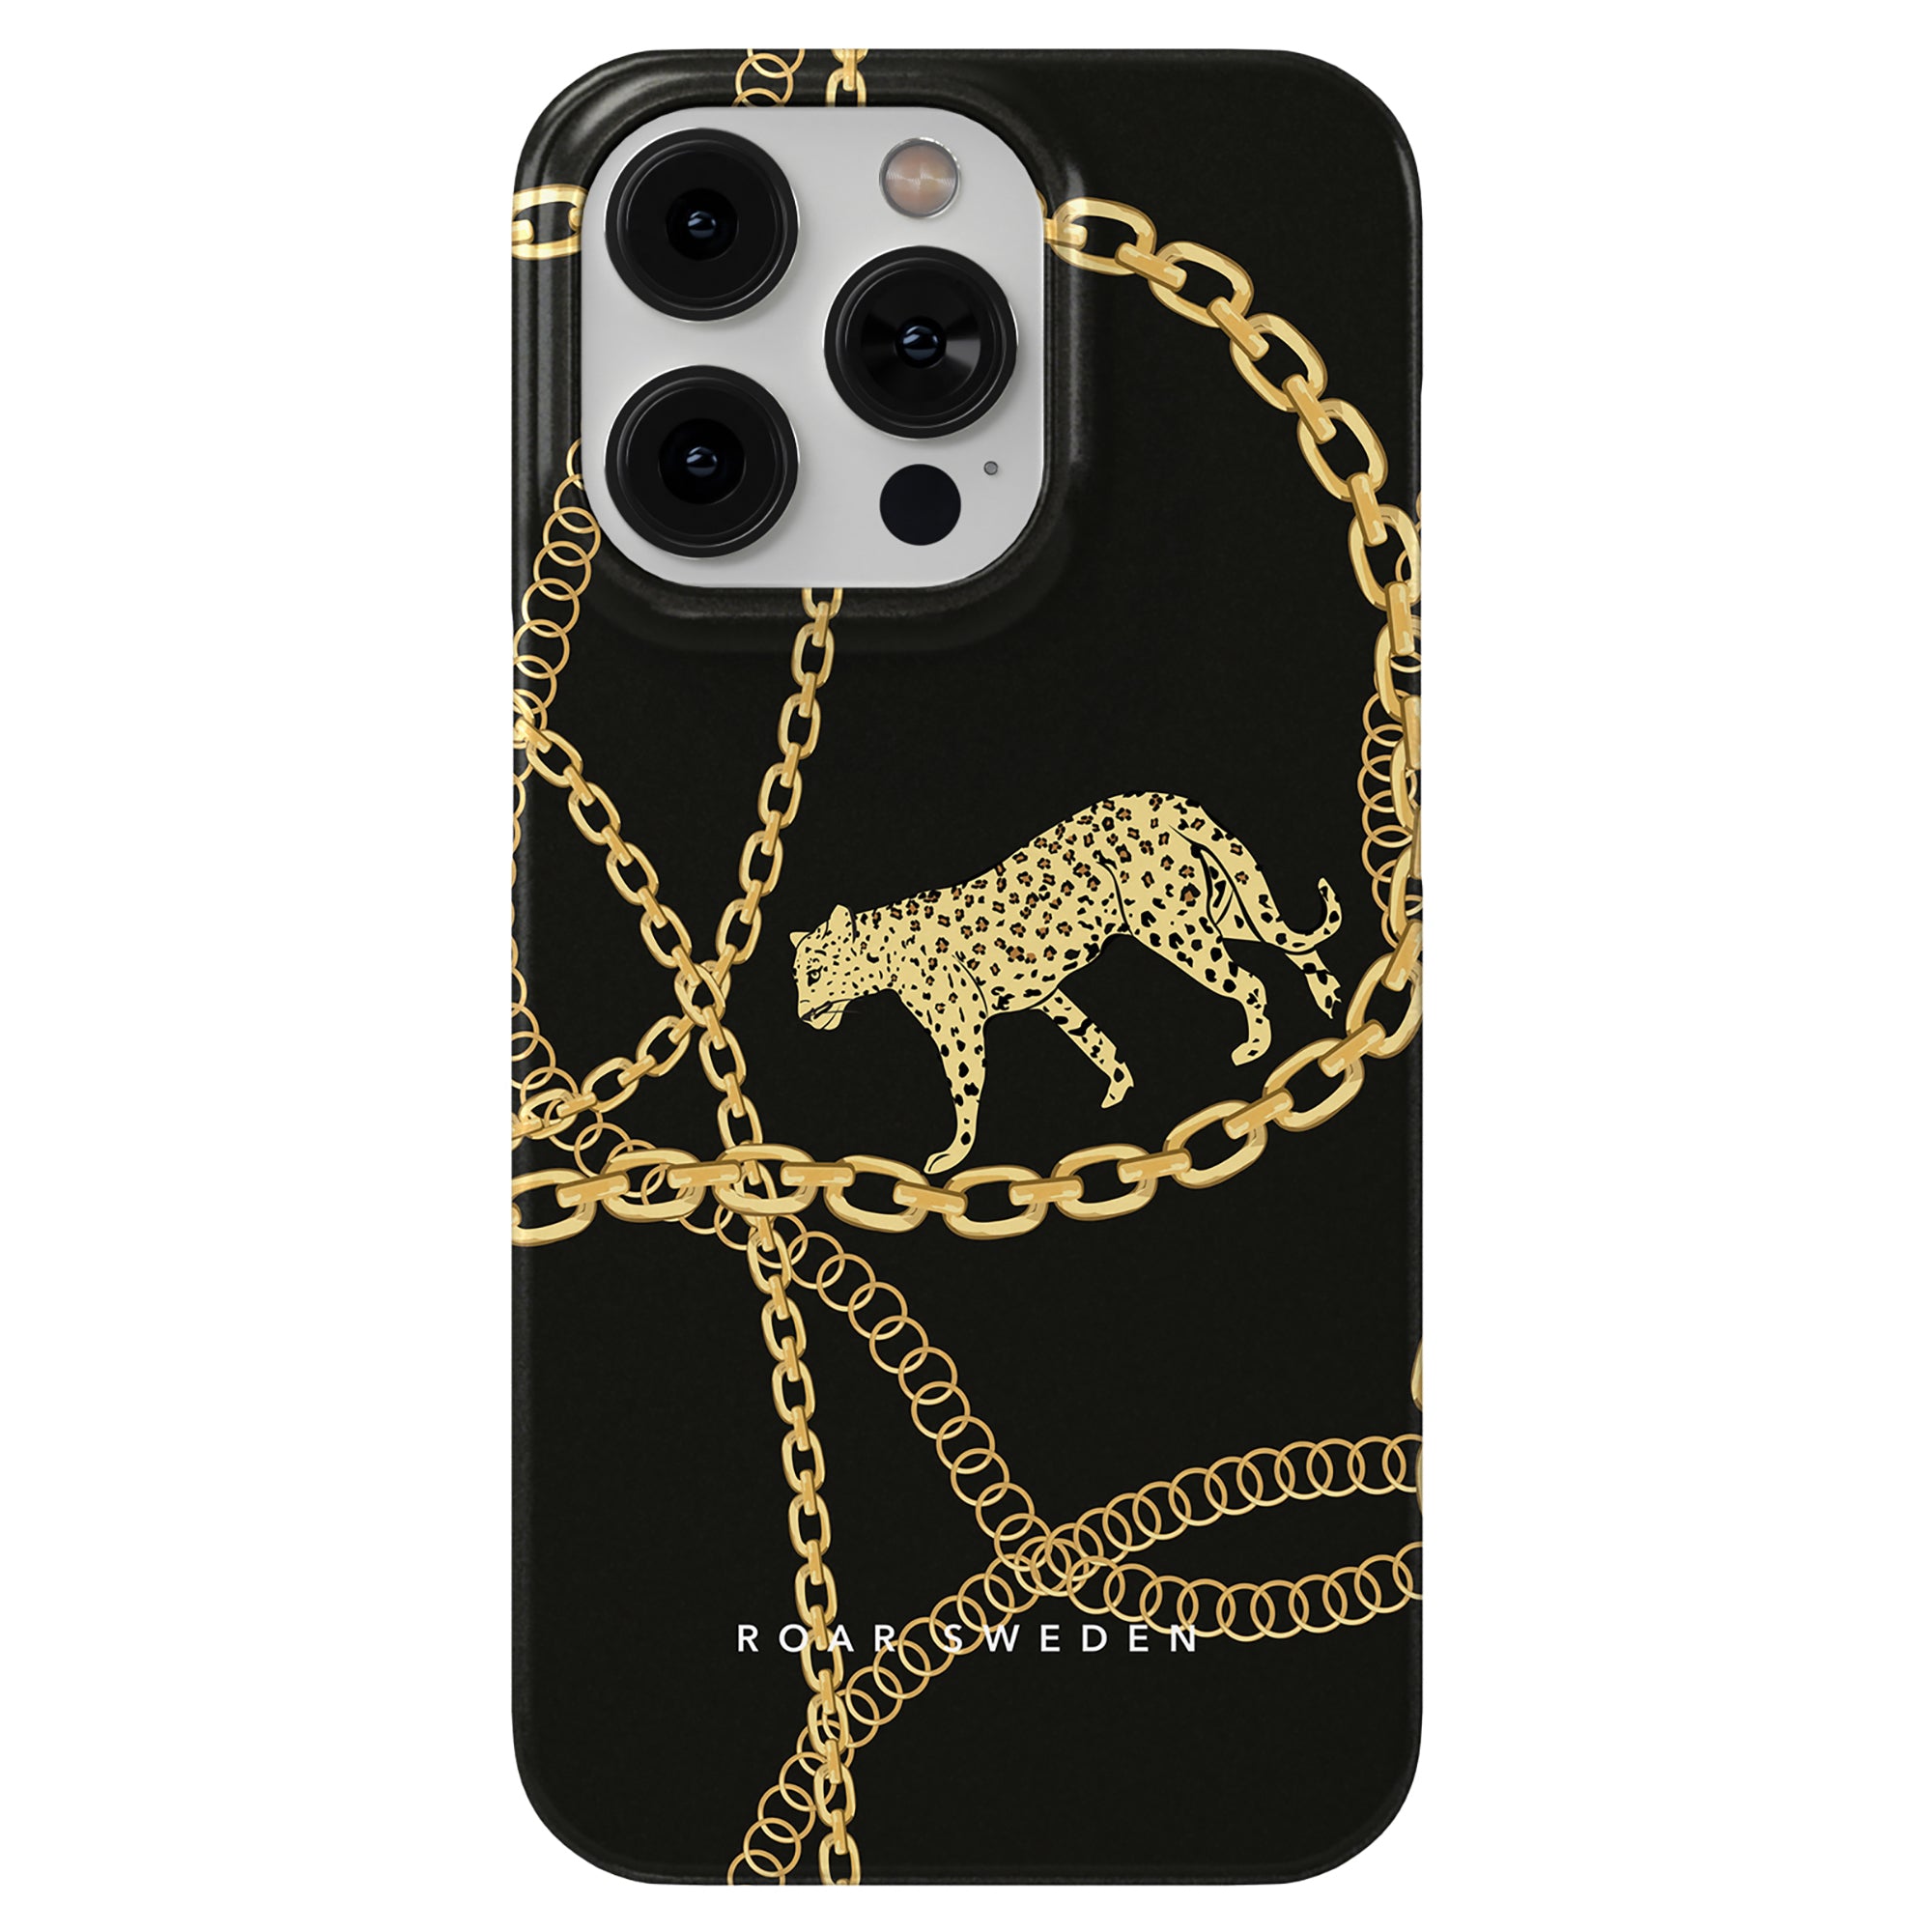 Beskrivning: Ett mobilskal med leopardmönster och Chains - Slim case i guld.